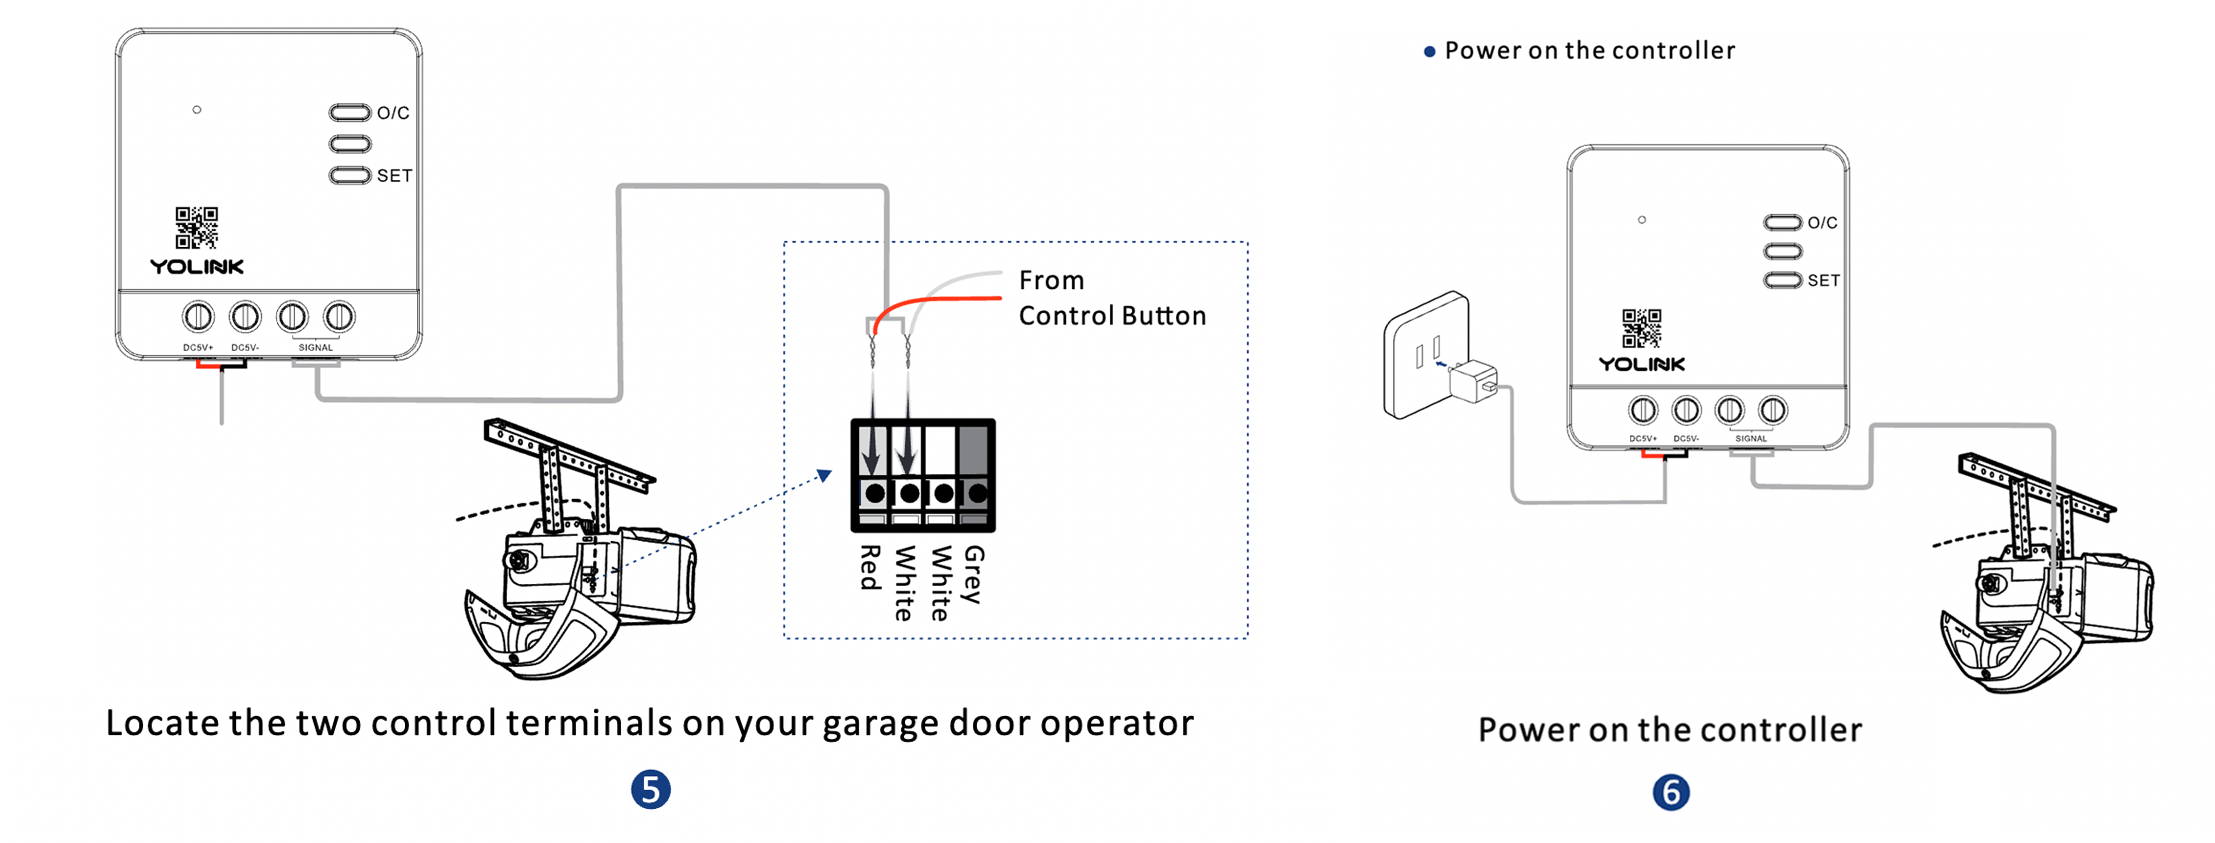 Smart garage opener instructions on installing YoLink Garage Door Controller 1.